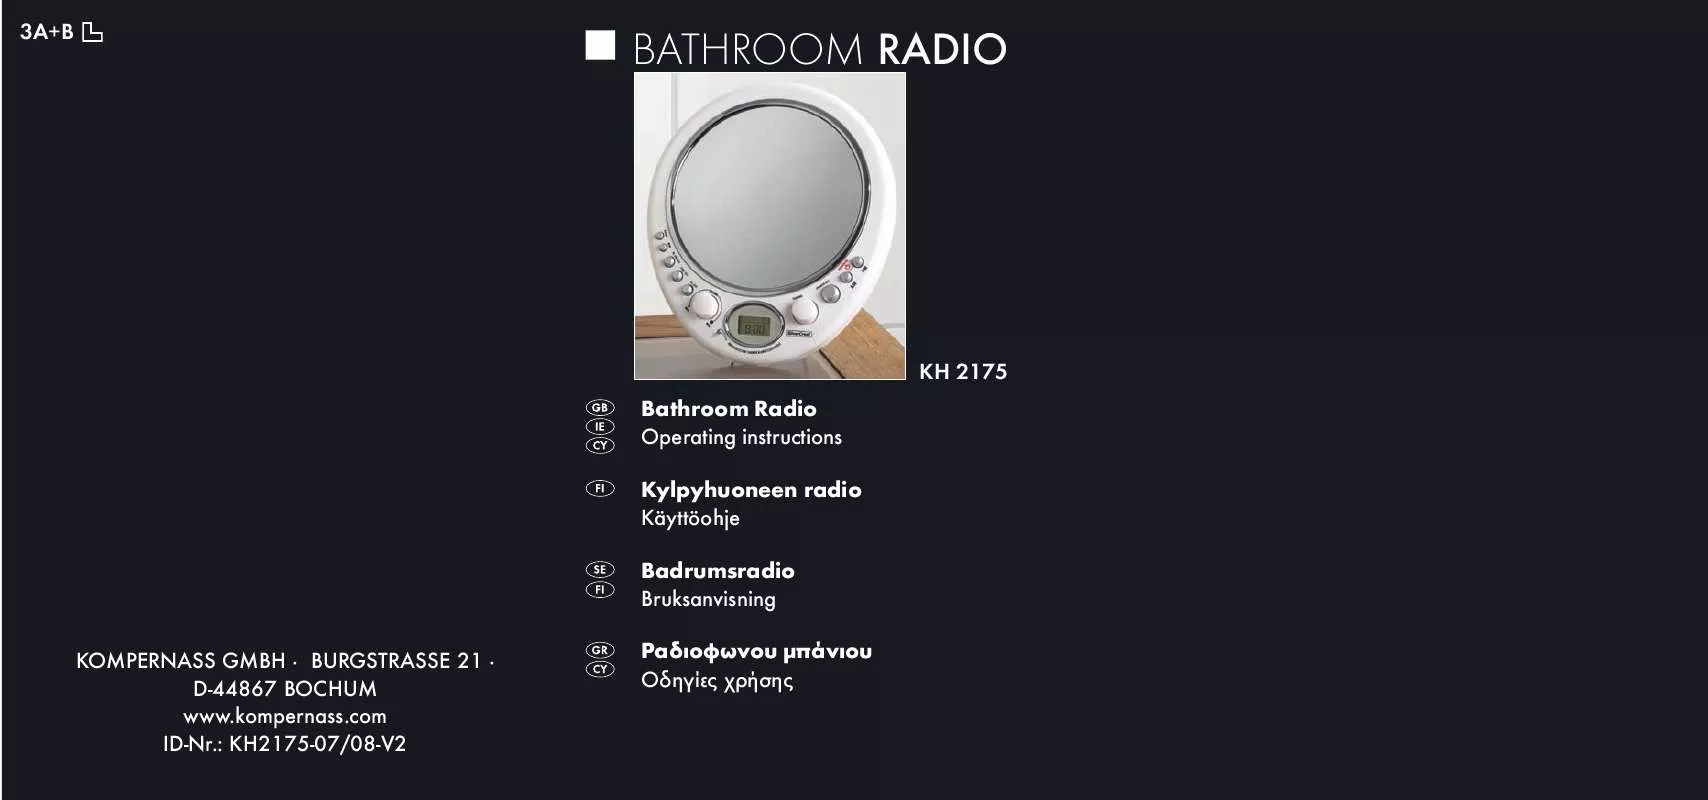 Mode d'emploi KOMPERNASS SILVERCREST KH 2175 BATHROOM RADIO